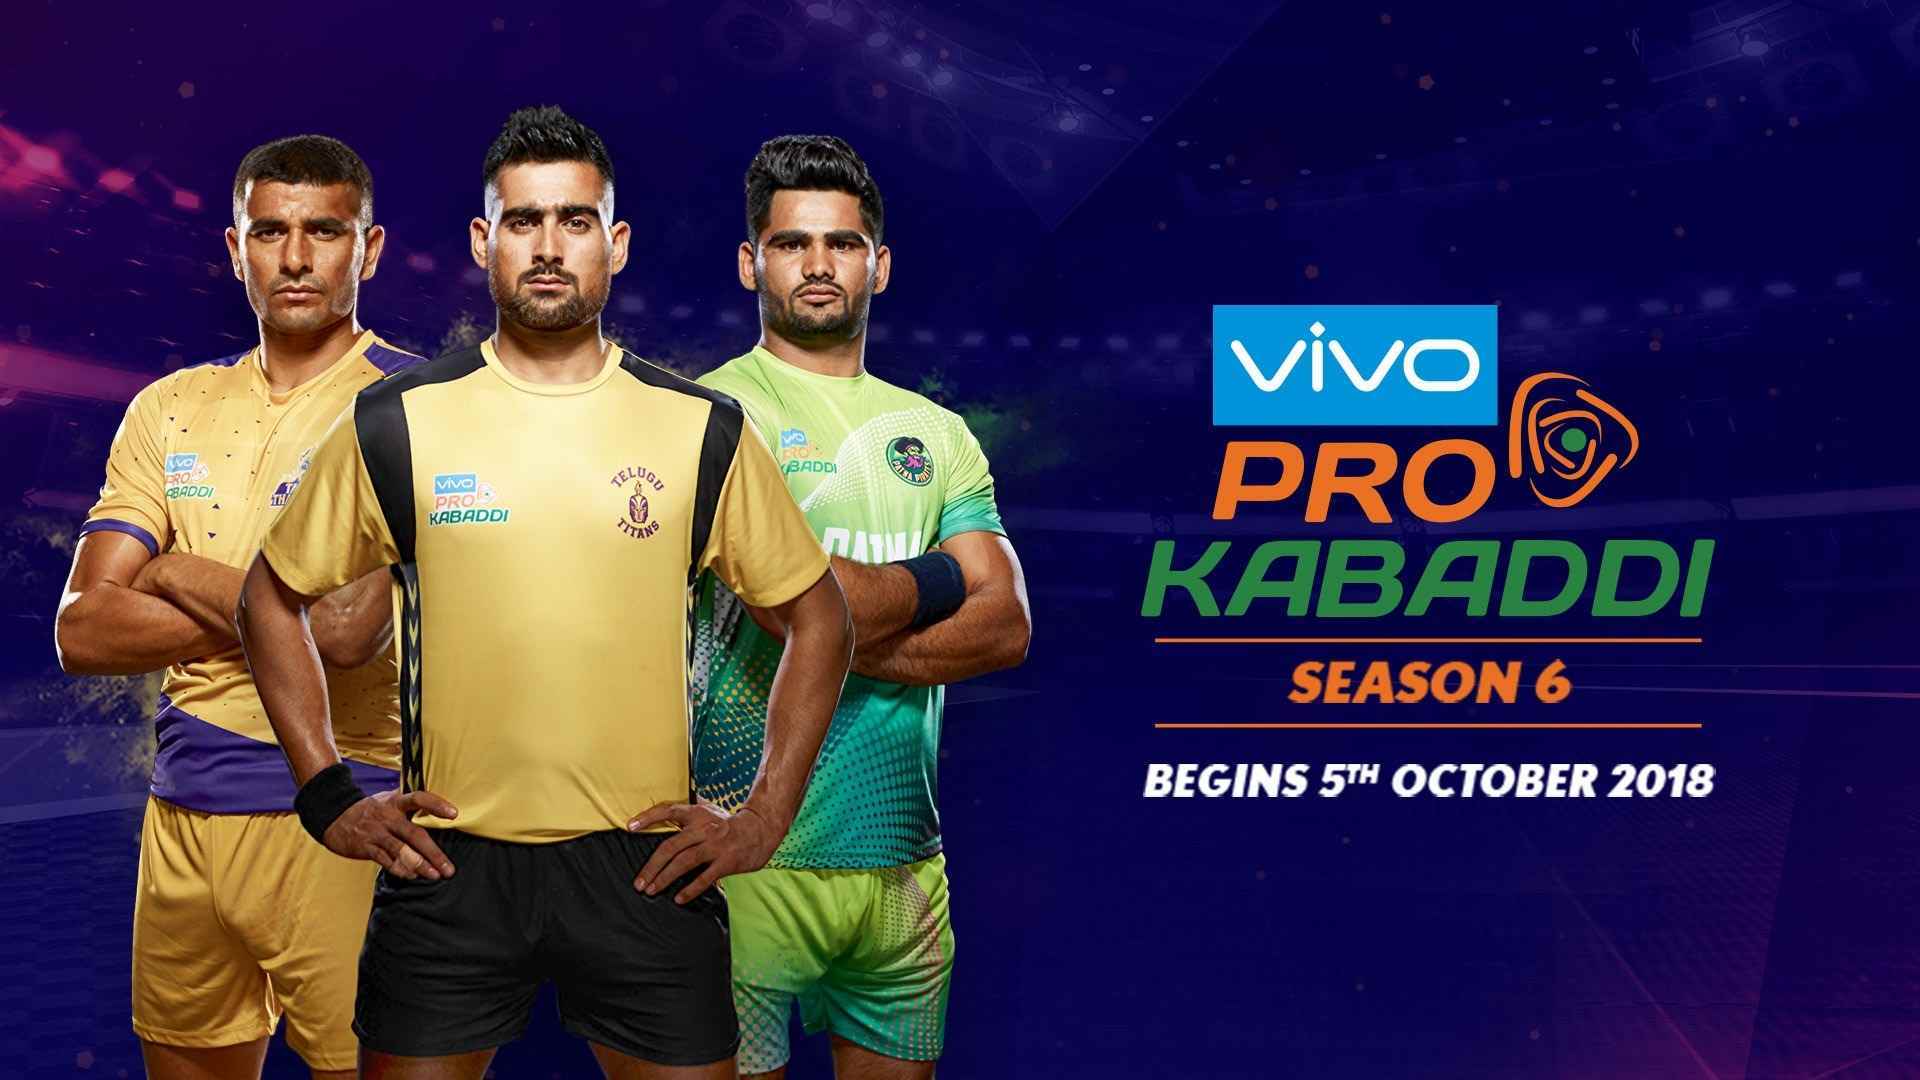 Pro Kabaddi Season - Vivo Pro Kabaddi 2018 , HD Wallpaper & Backgrounds